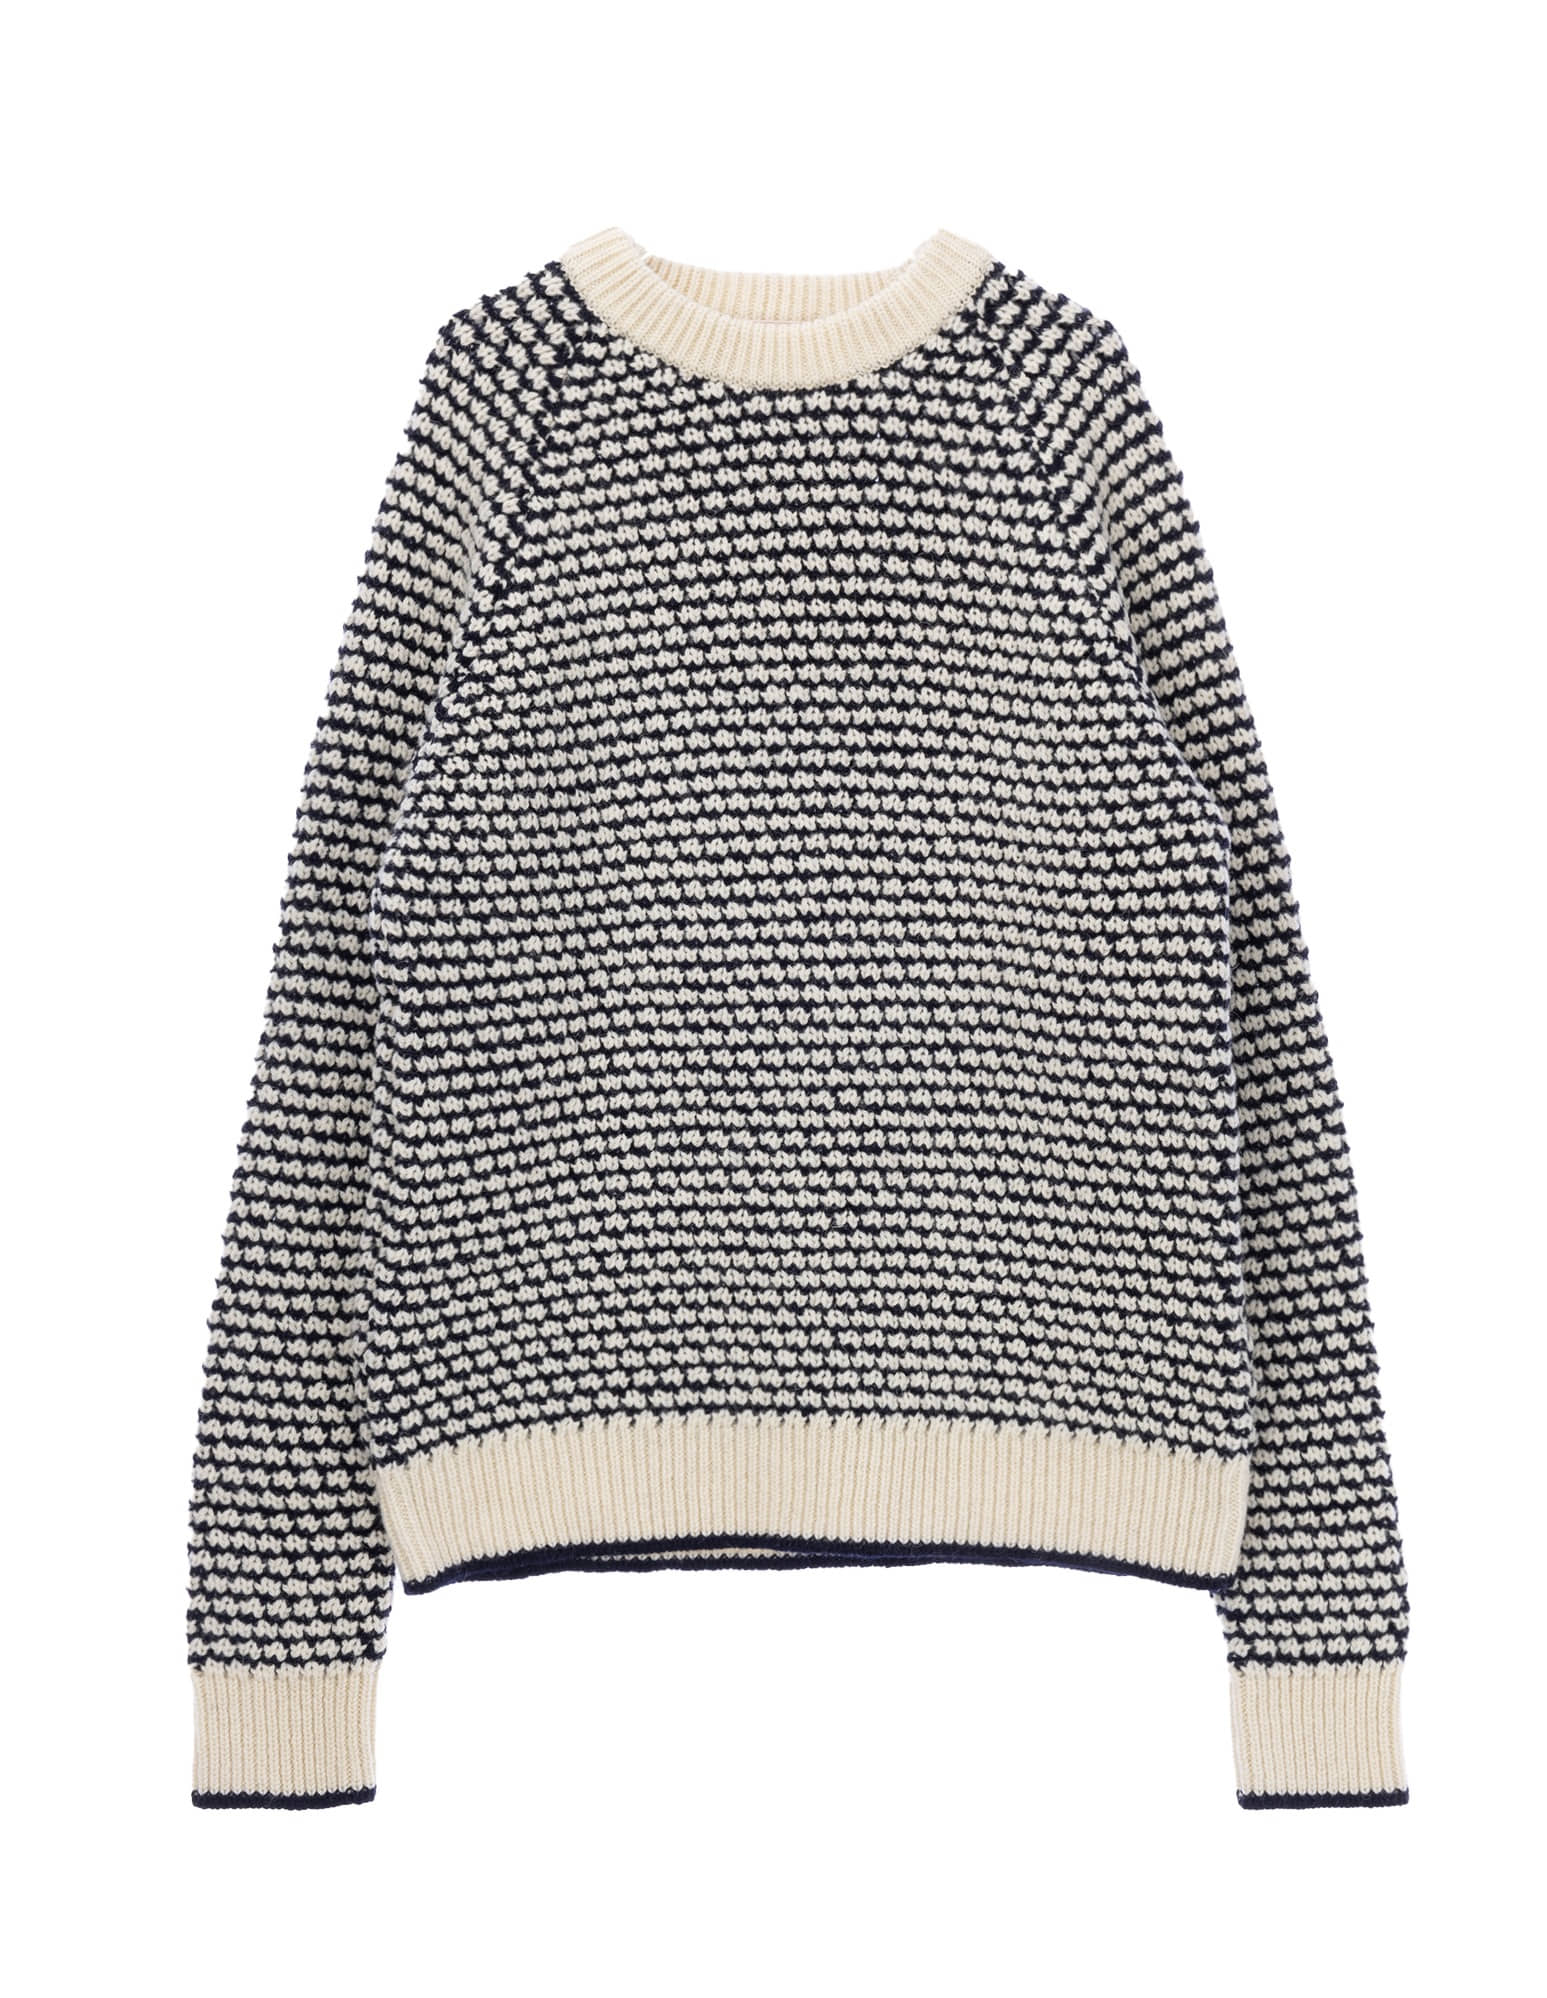 Popcorn Sweater Shetland Wool  (Navy)